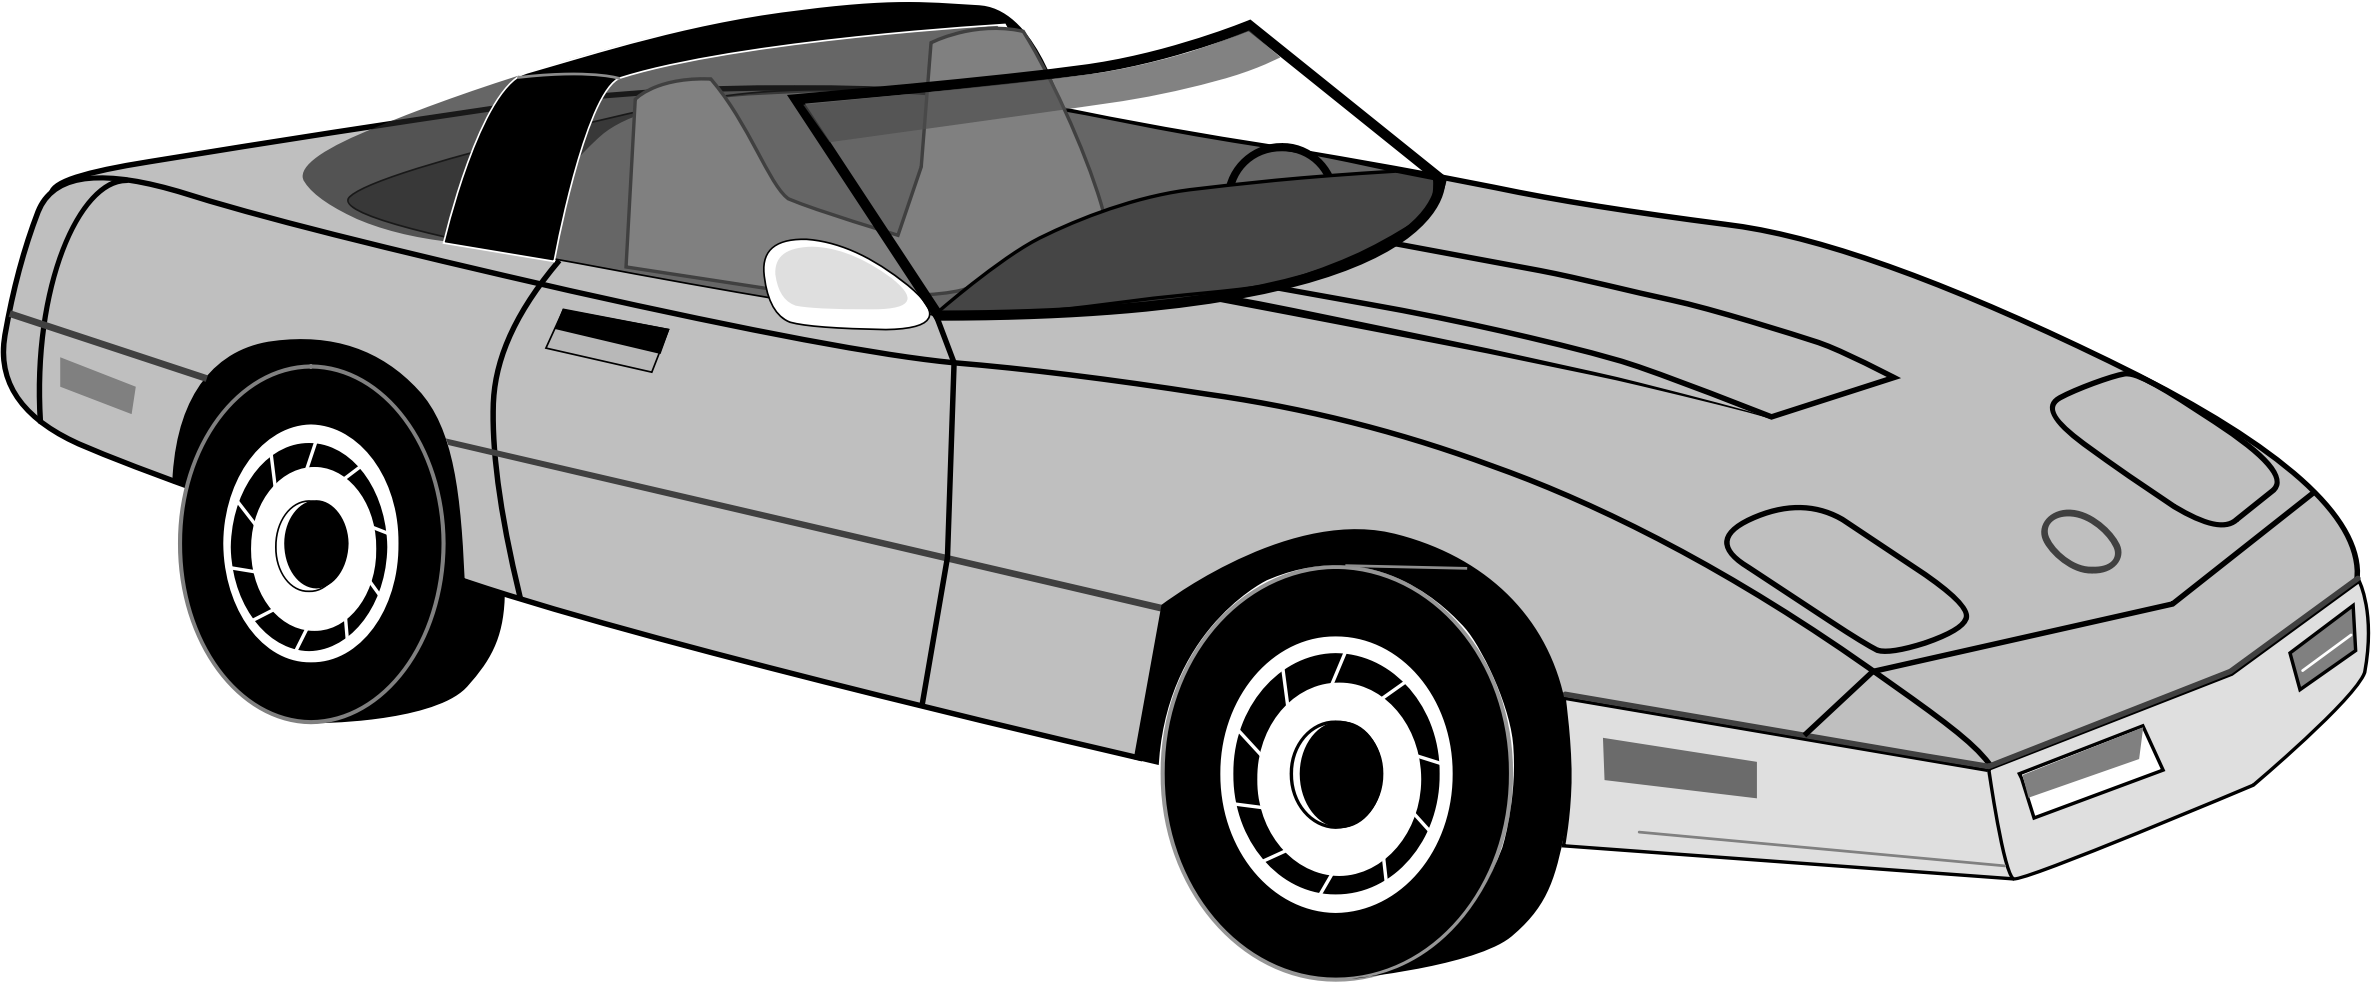 Sports Car Chevrolet Corvette Line Art Clip Art Cartoon Car Png Download 2371 982 Free Transparent Car Png Download Clip Art Library